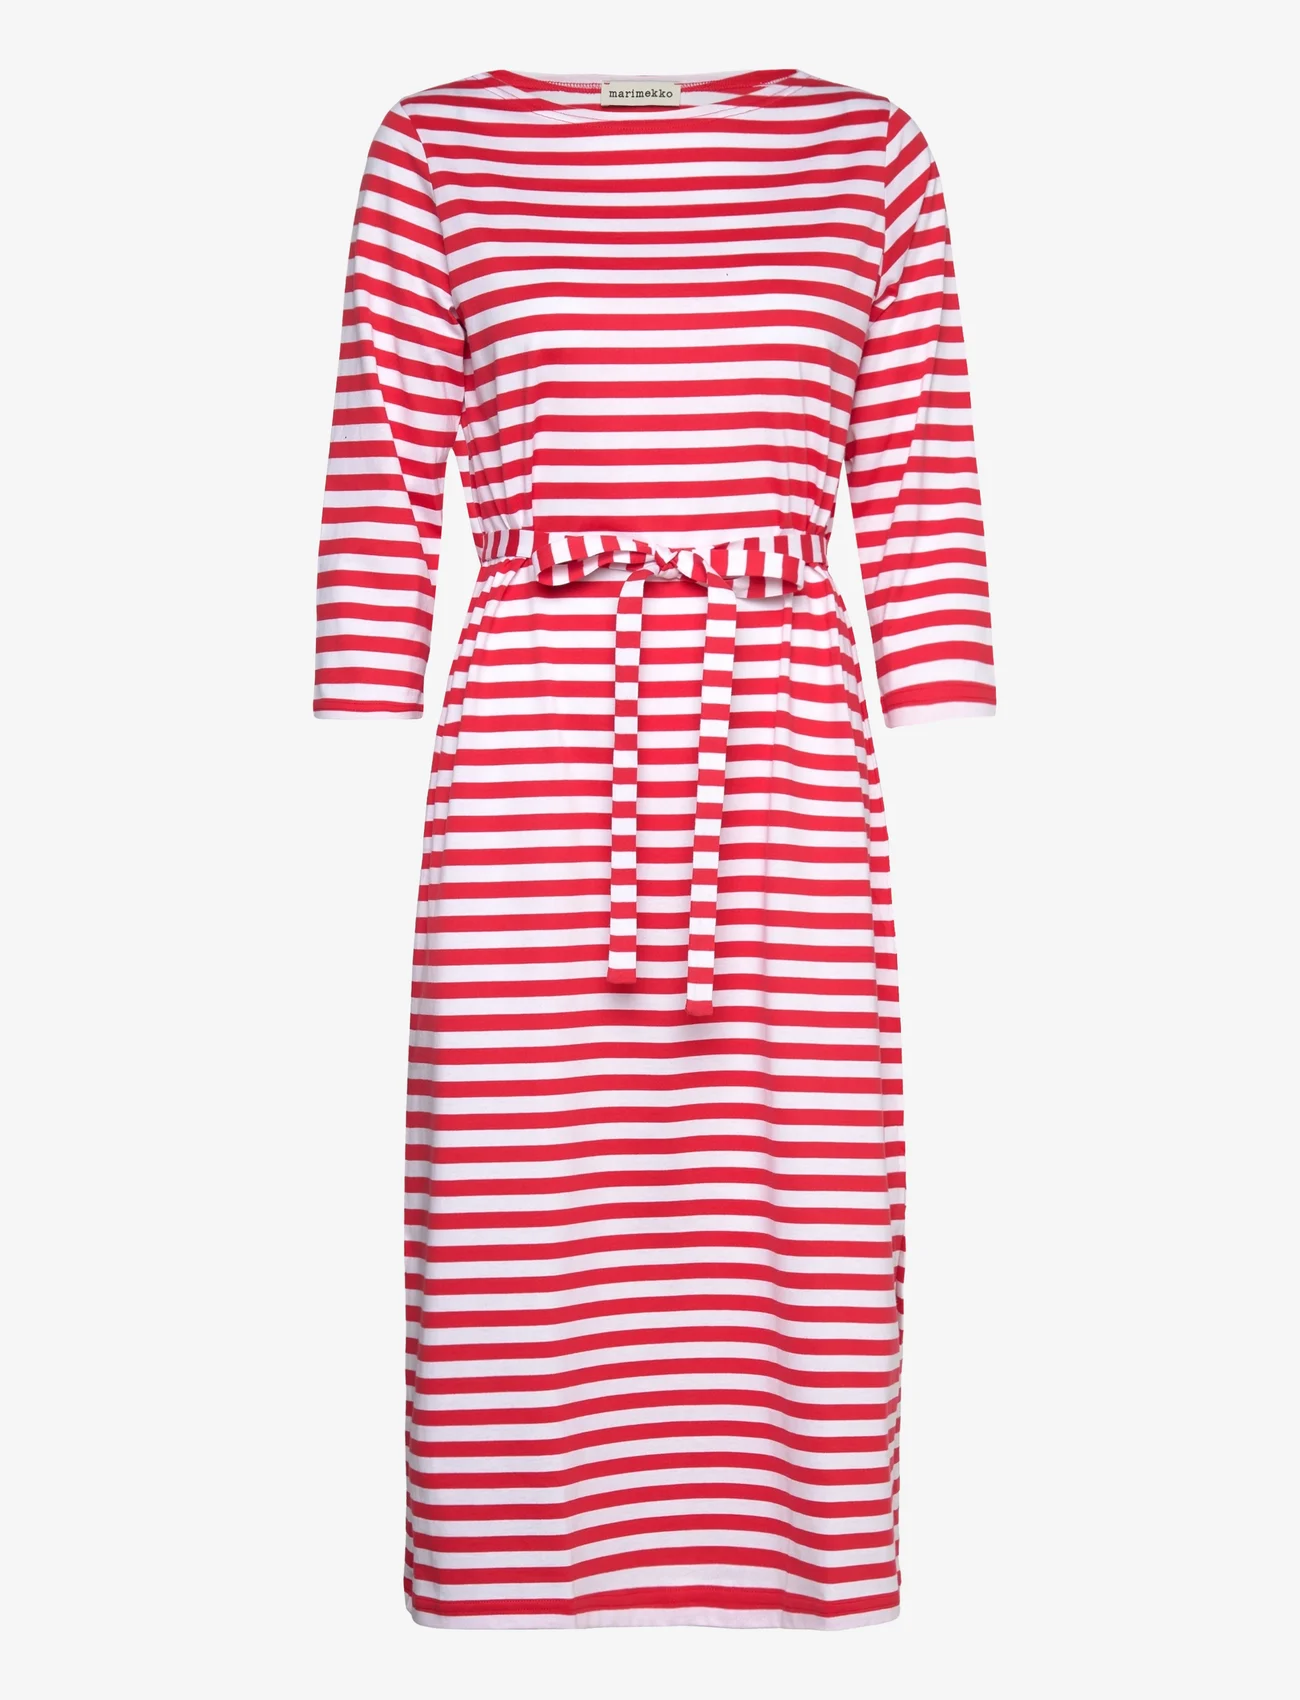 Marimekko - TASARAITA ILMA DRESS - t-shirtklänningar - red, white - 0